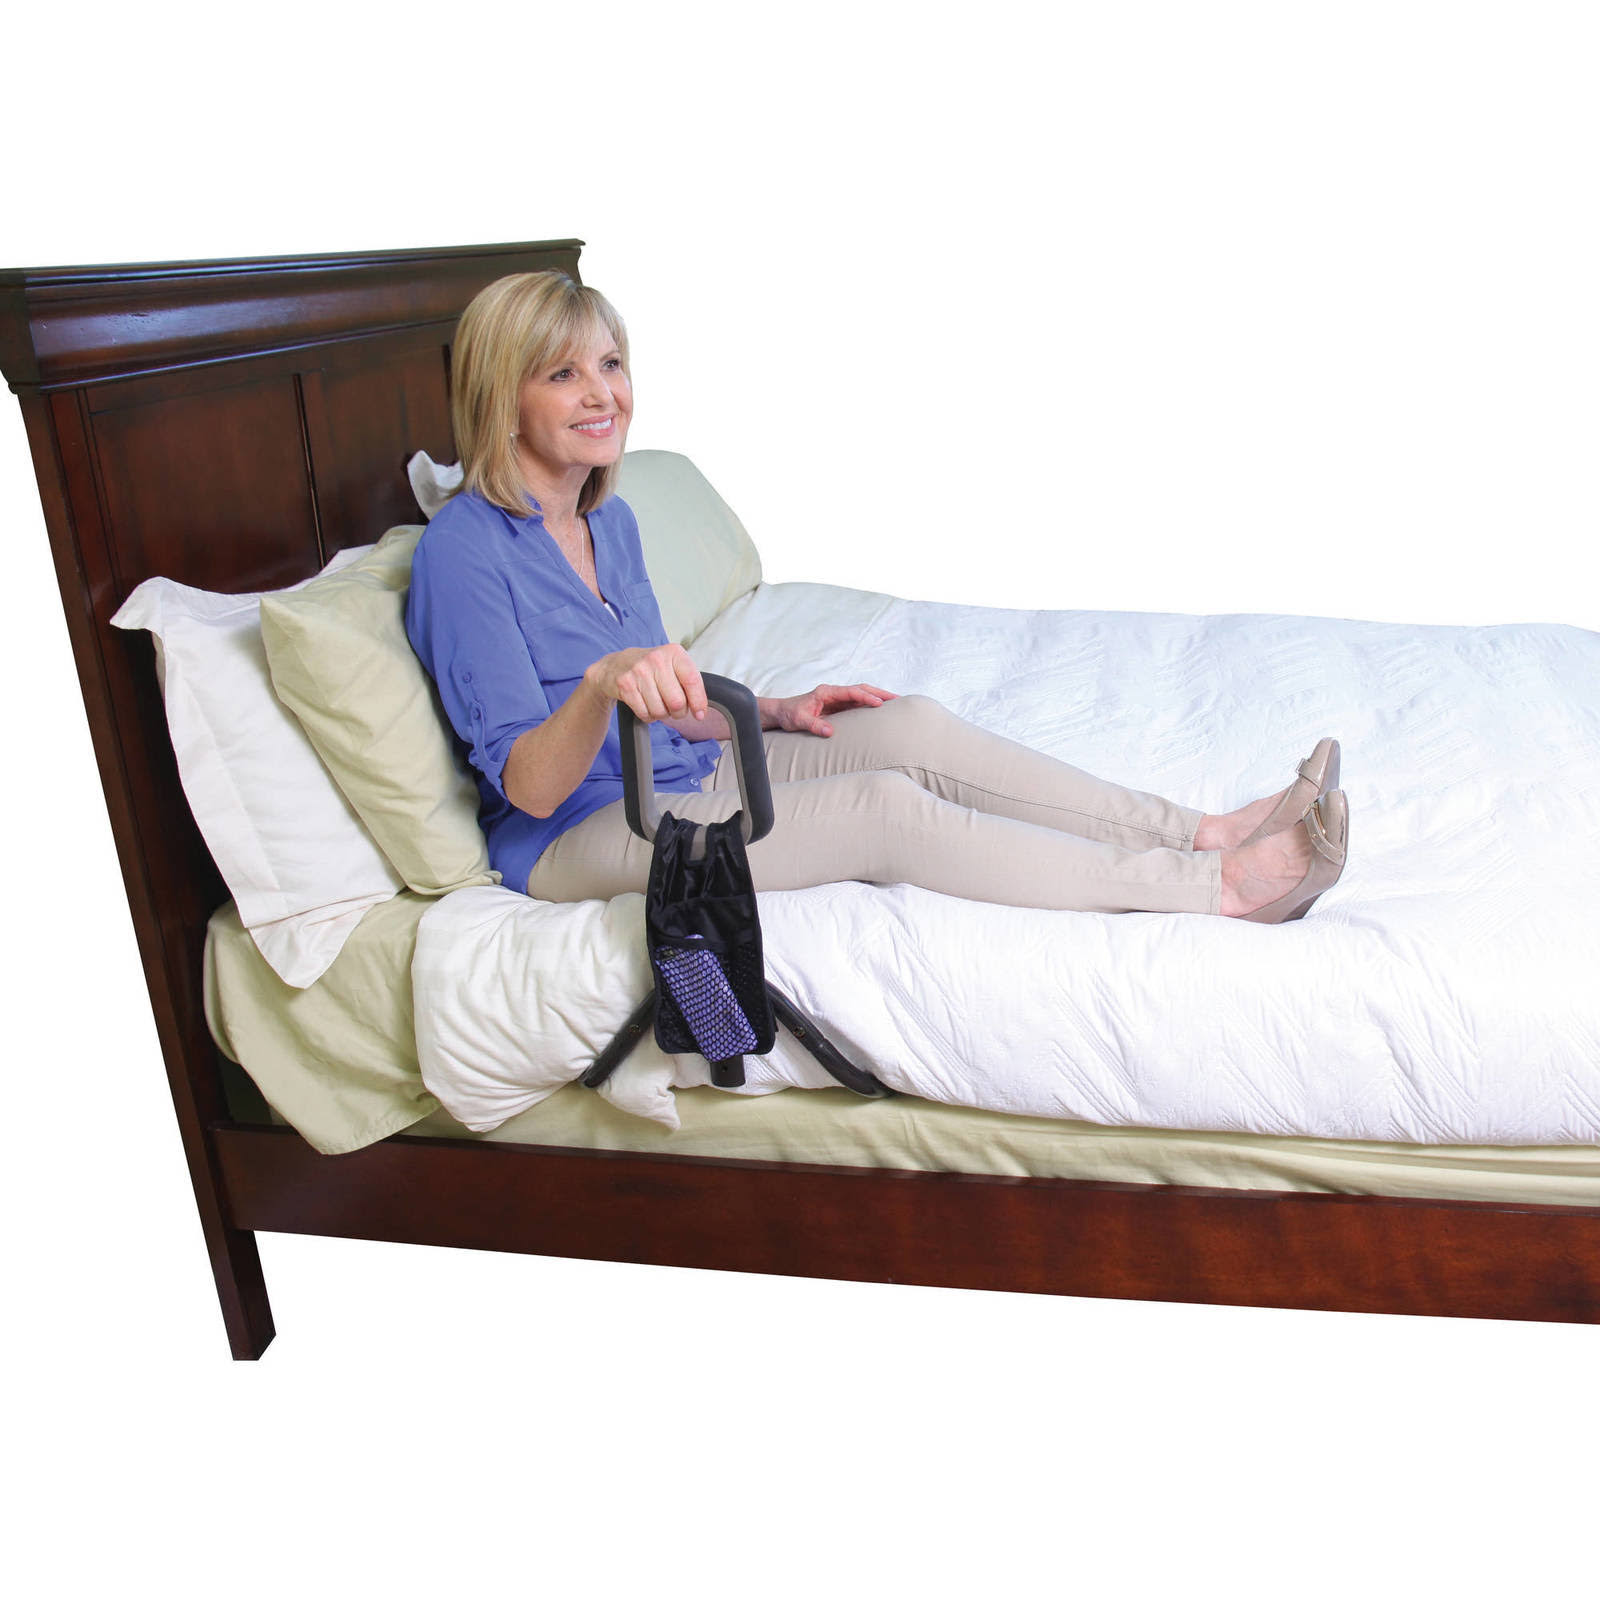 Stander Pt Bed Cane Model 2100 Height Adjustable Bedside Assist Handle Portable